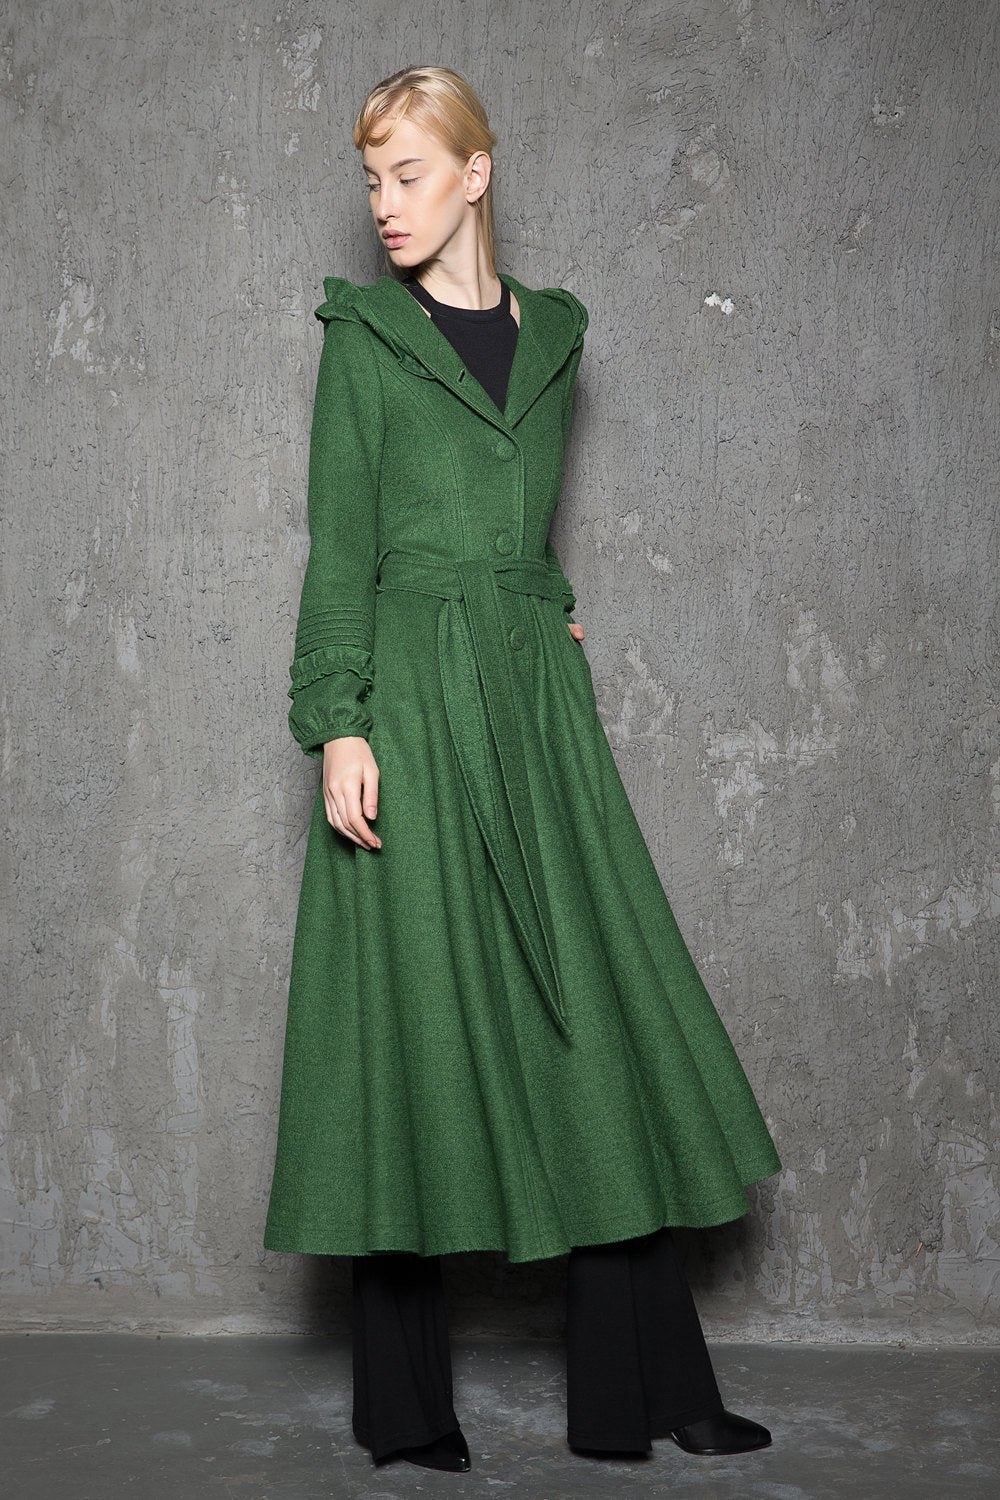 Maxi coat, wool coat, Green wool coat, emerald green coat, fit and